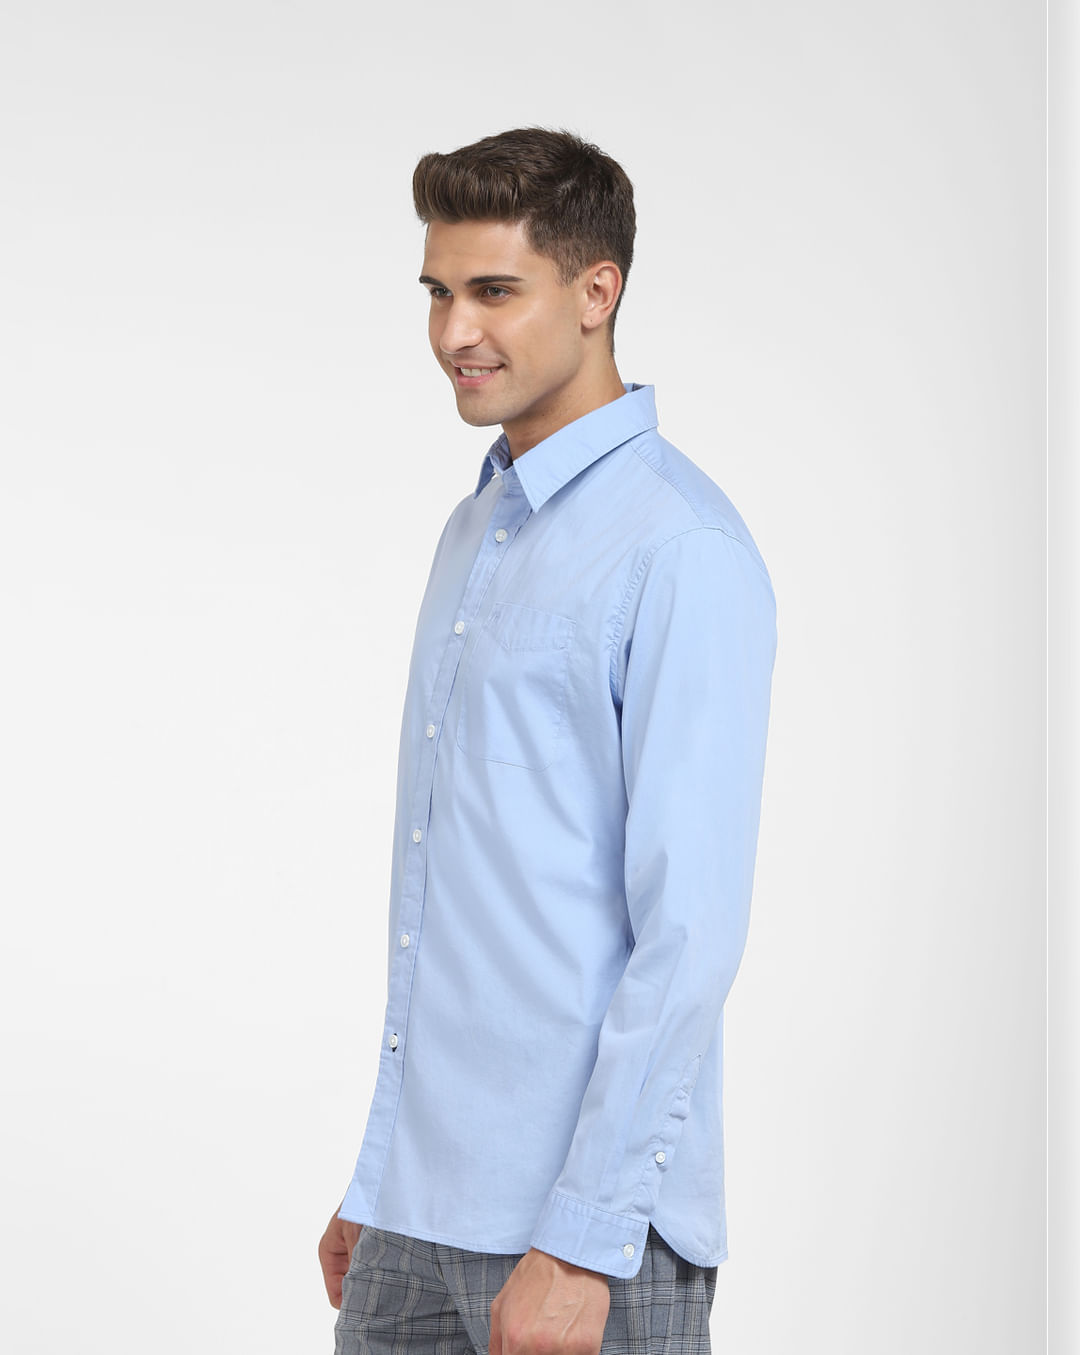 Shirt at Men for Sleeves Full Formal |228538603 Online Light Blue HOMME SELECTED Buy